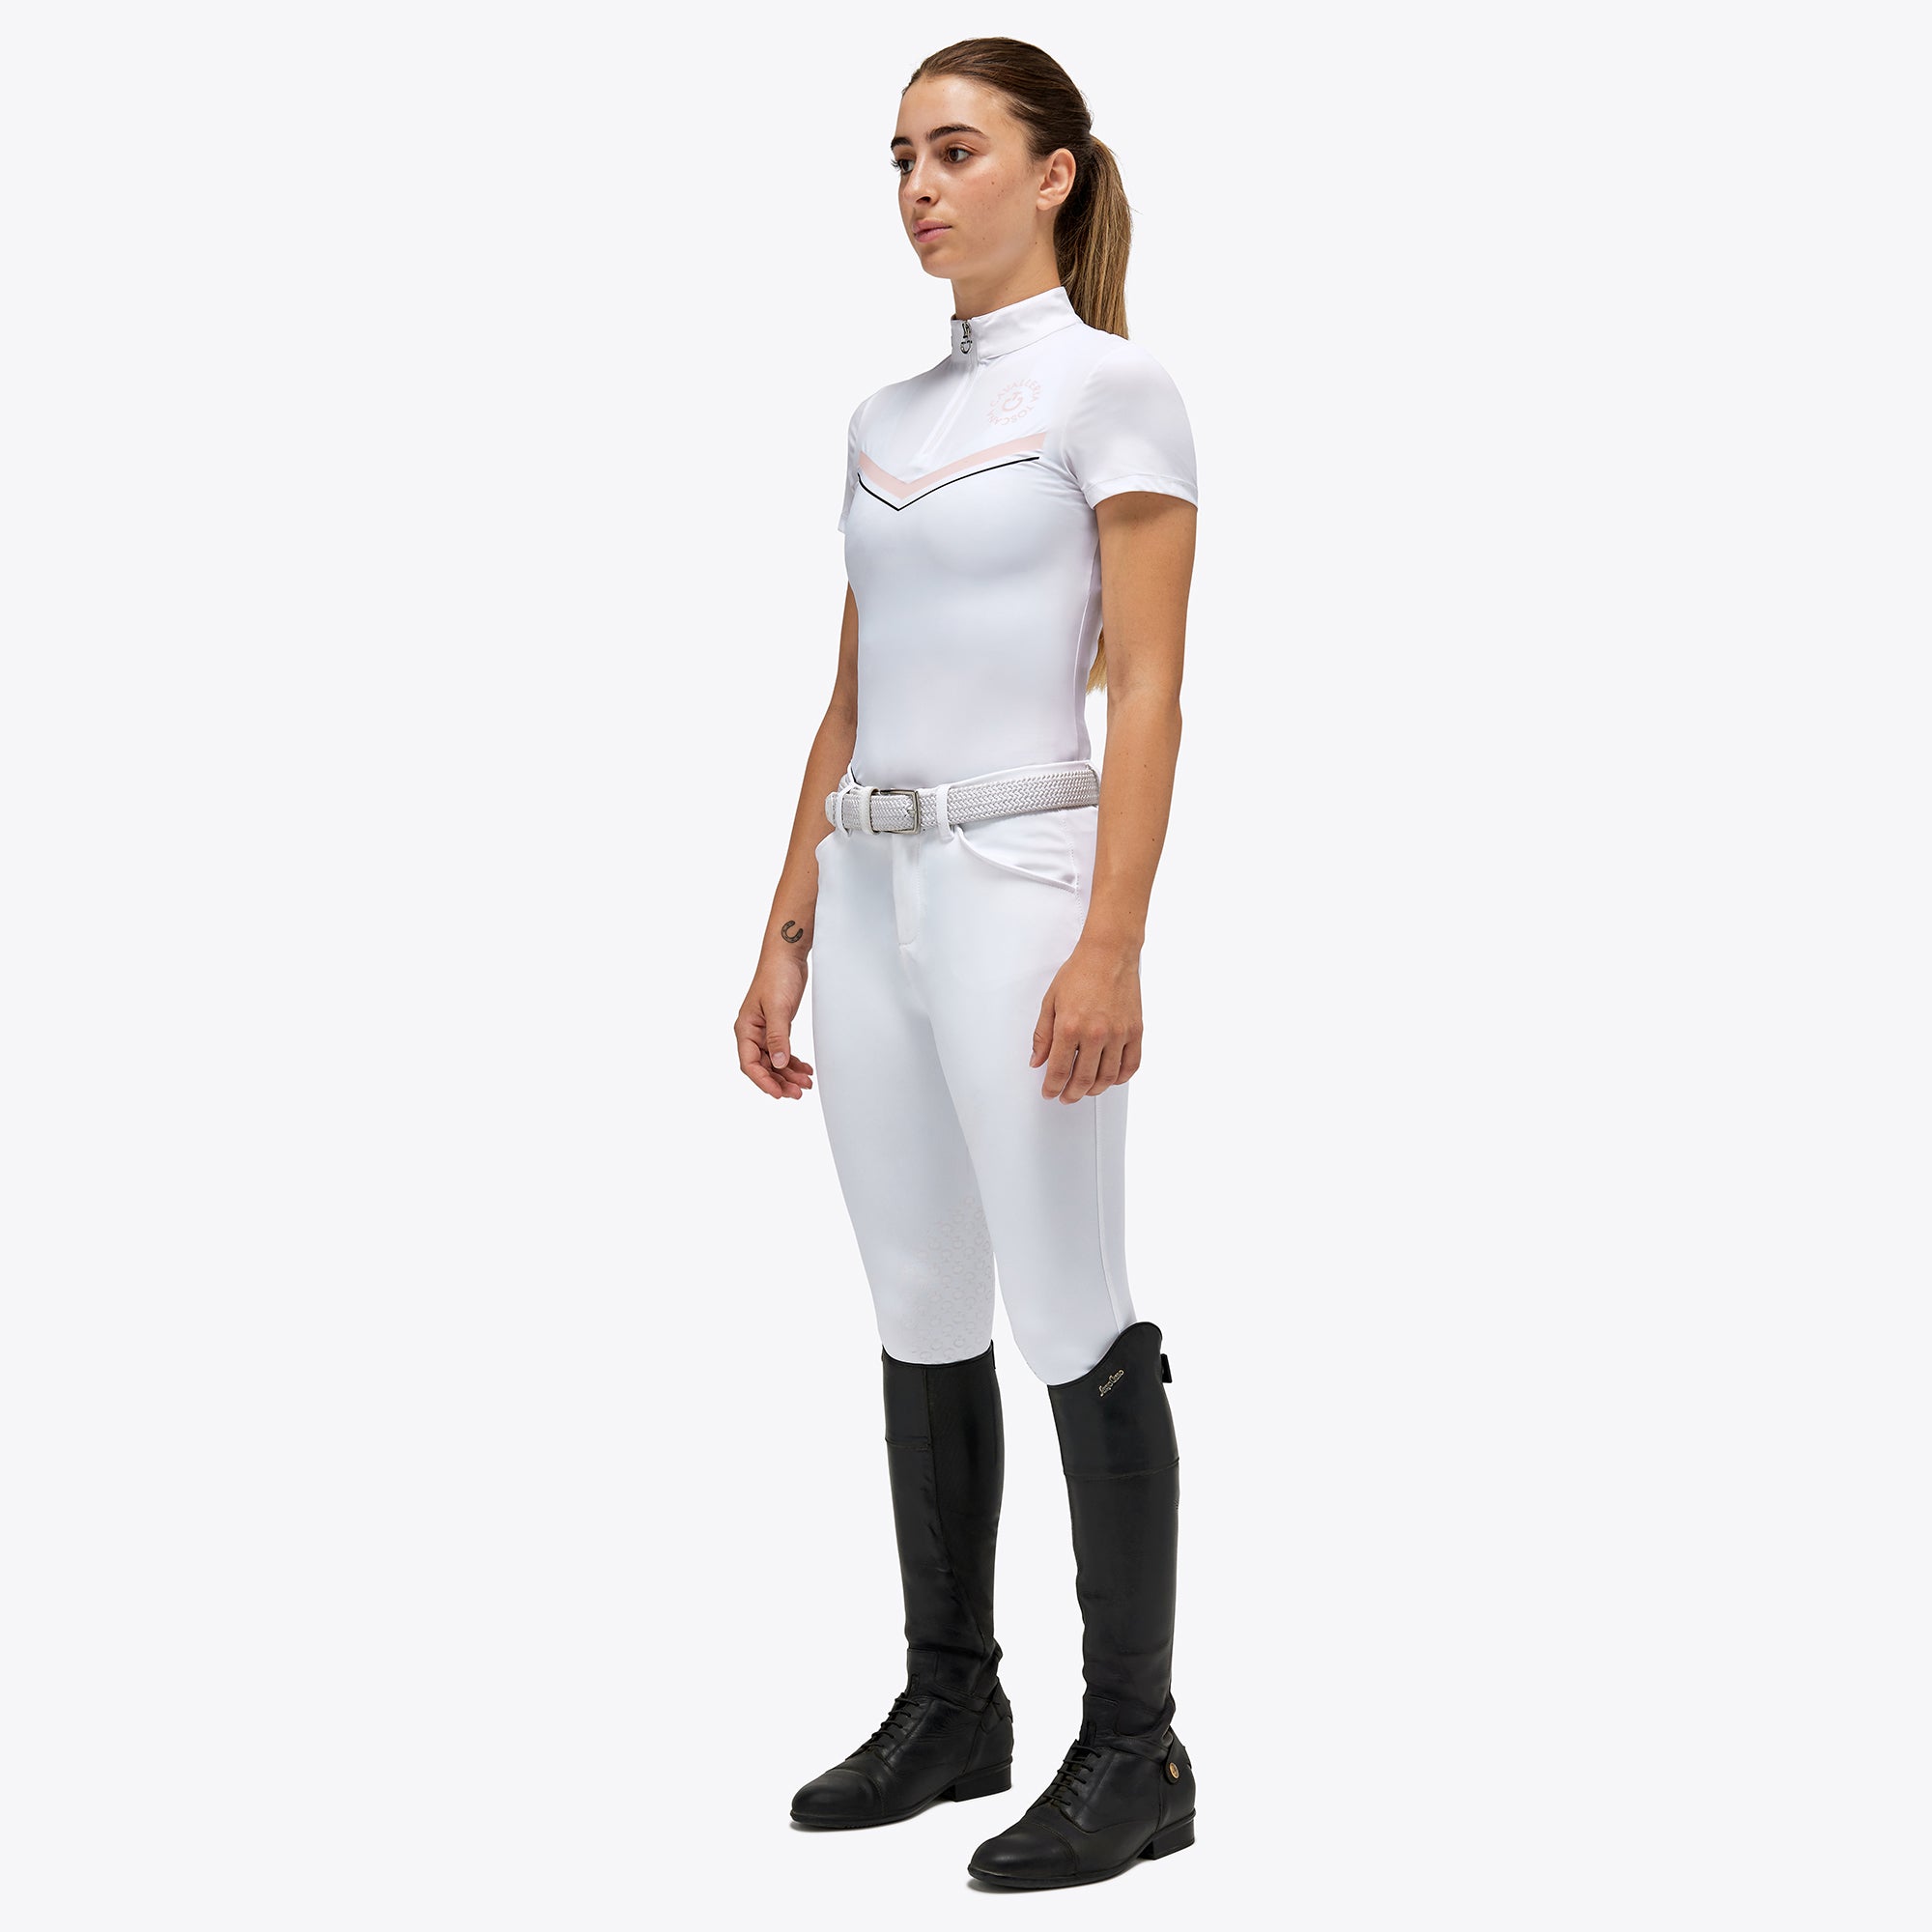 Girls CT Orbit Print Show Shirt - White